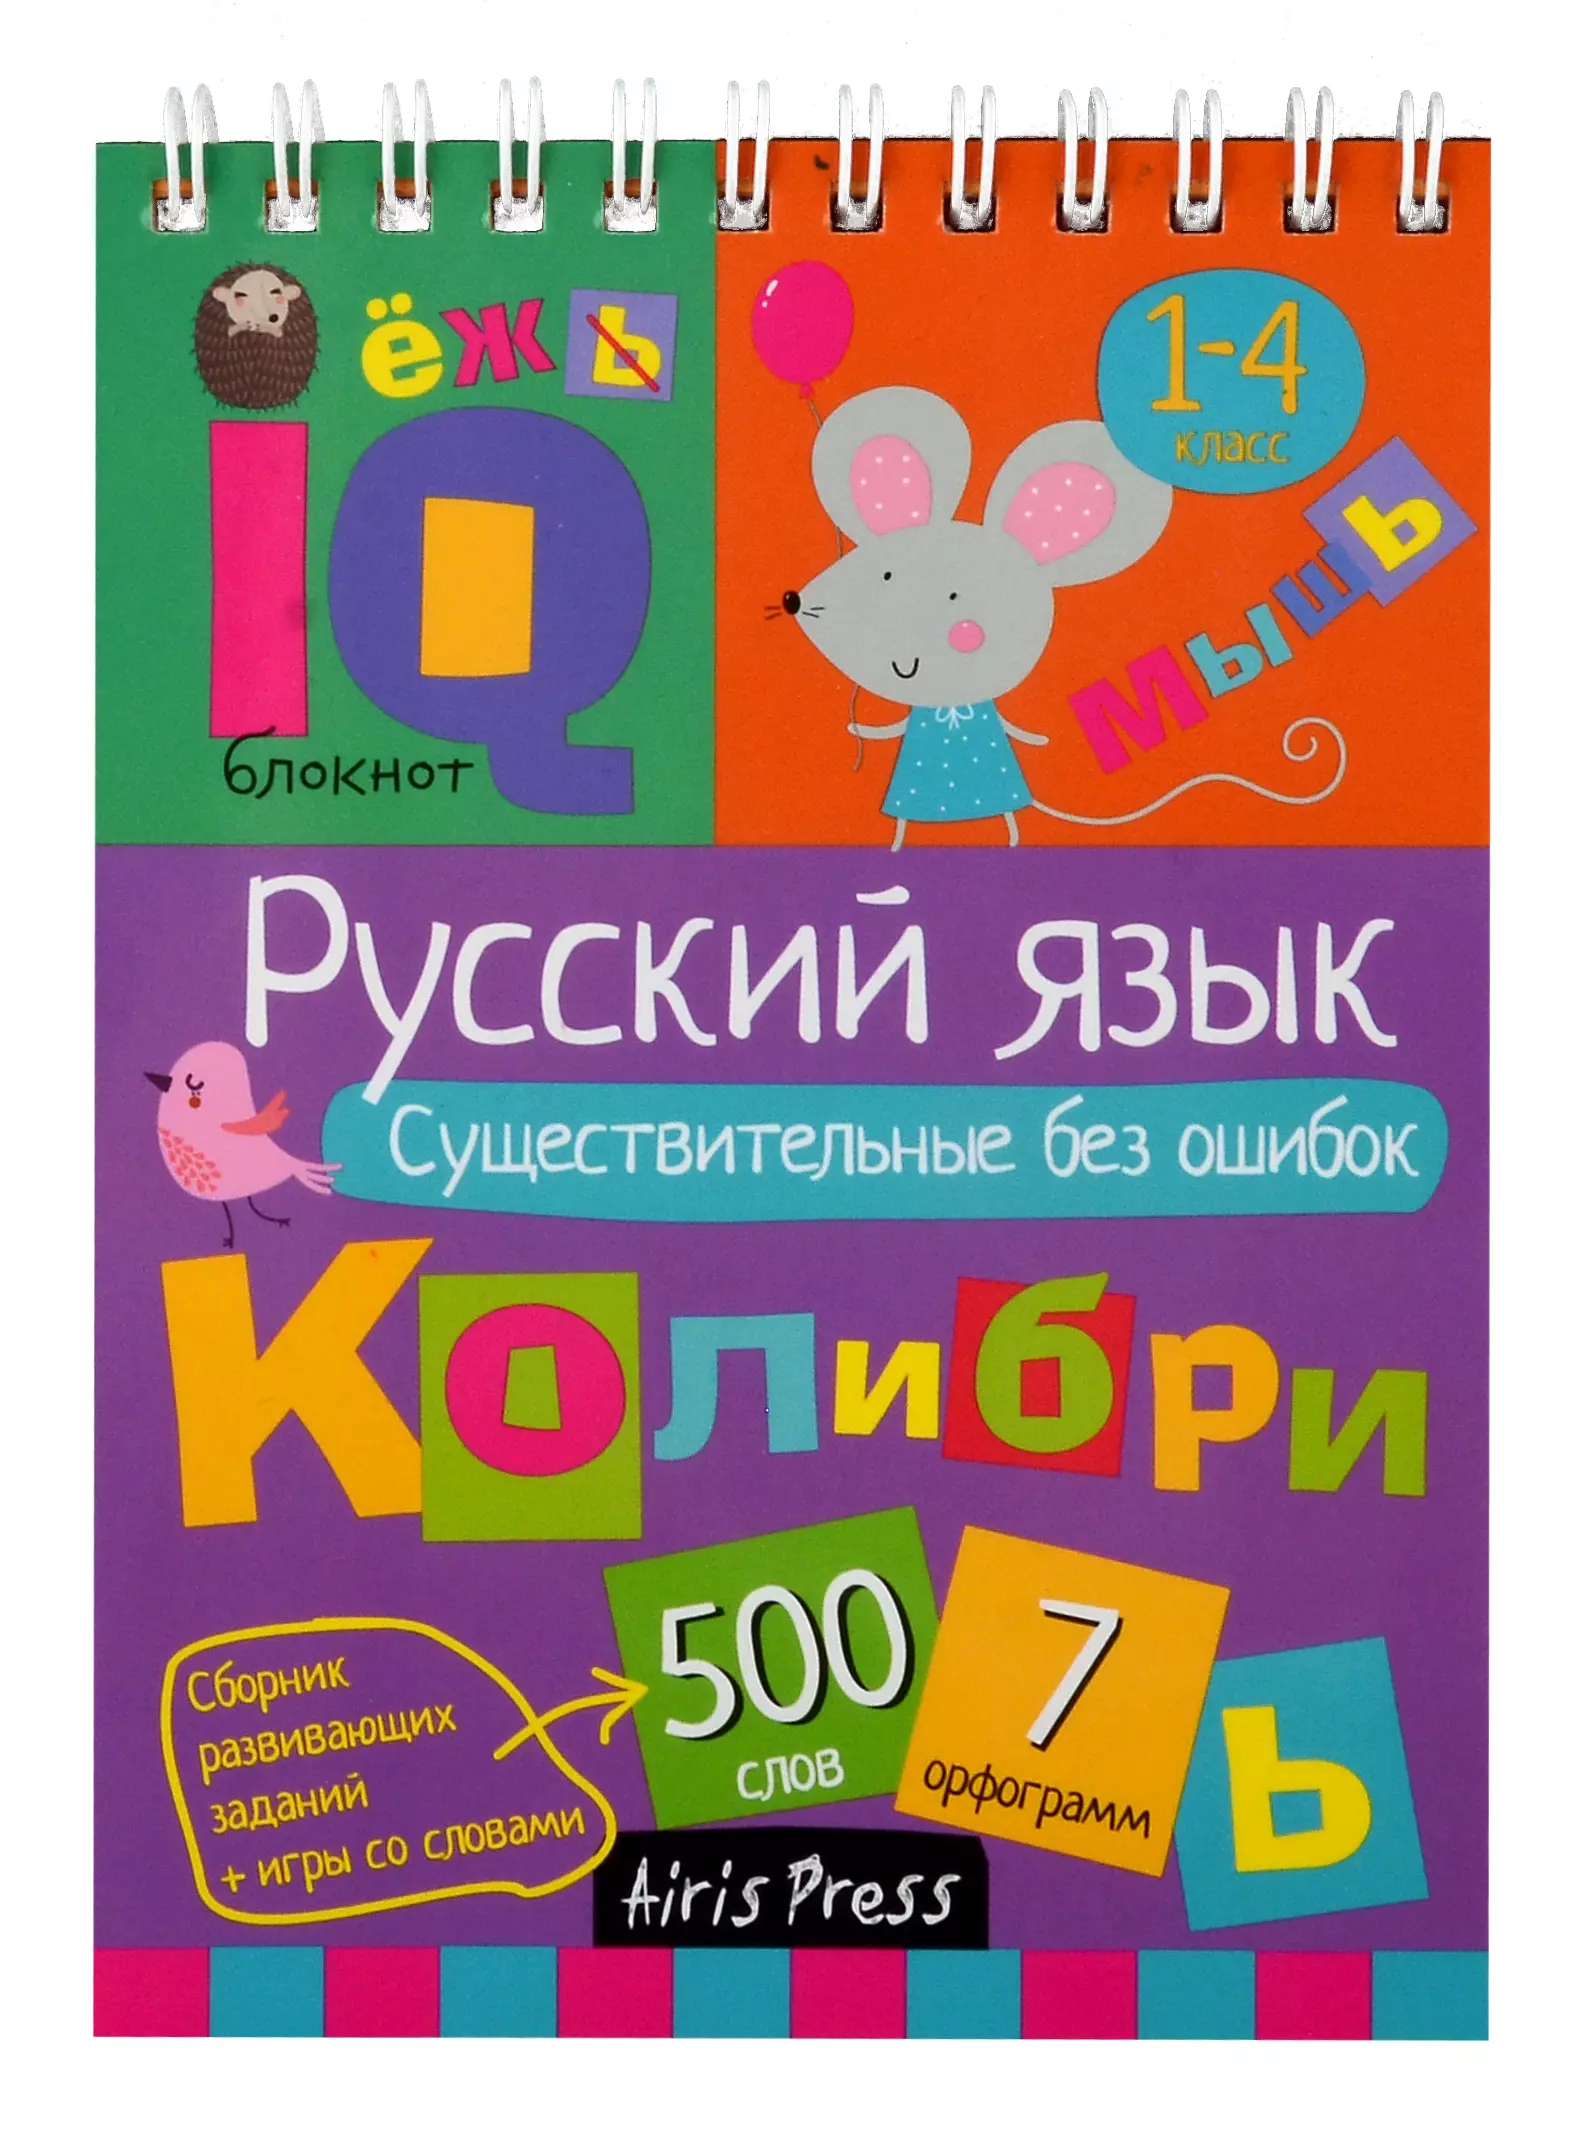 IQ блокнот. Русский язык. Существительные без ошибок. 1-4 класс printio блокнот блокнот iq